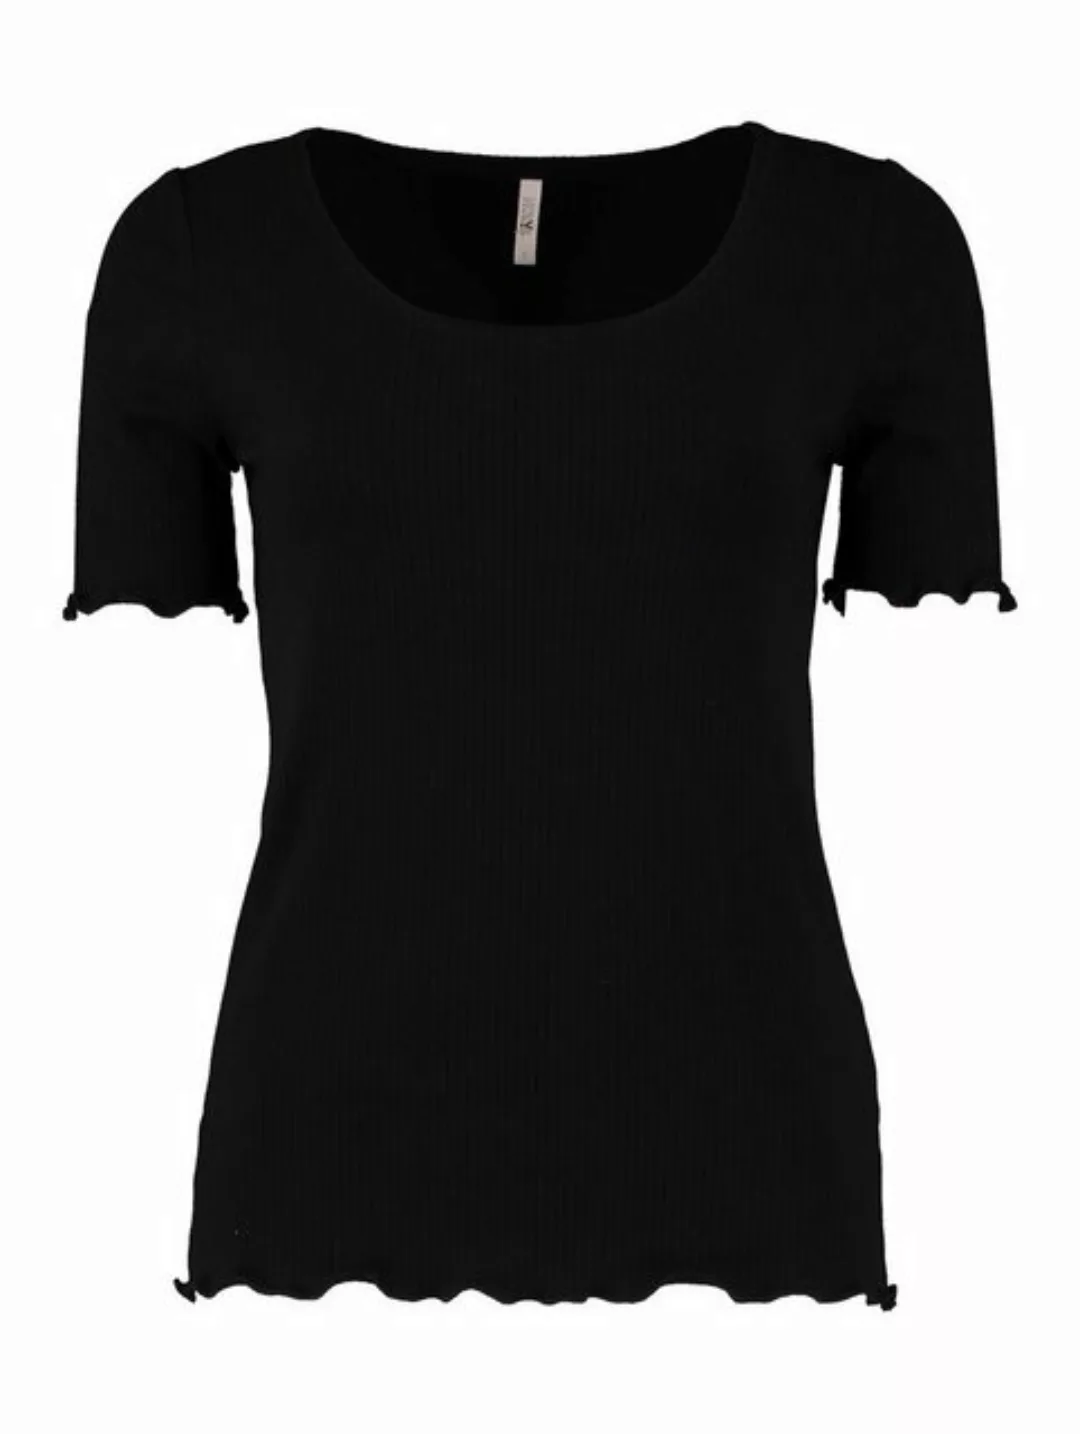 HaILY’S T-Shirt Top Halbarm Shirt Gerippt Rundhals Oberteil 7374 in Schwarz günstig online kaufen